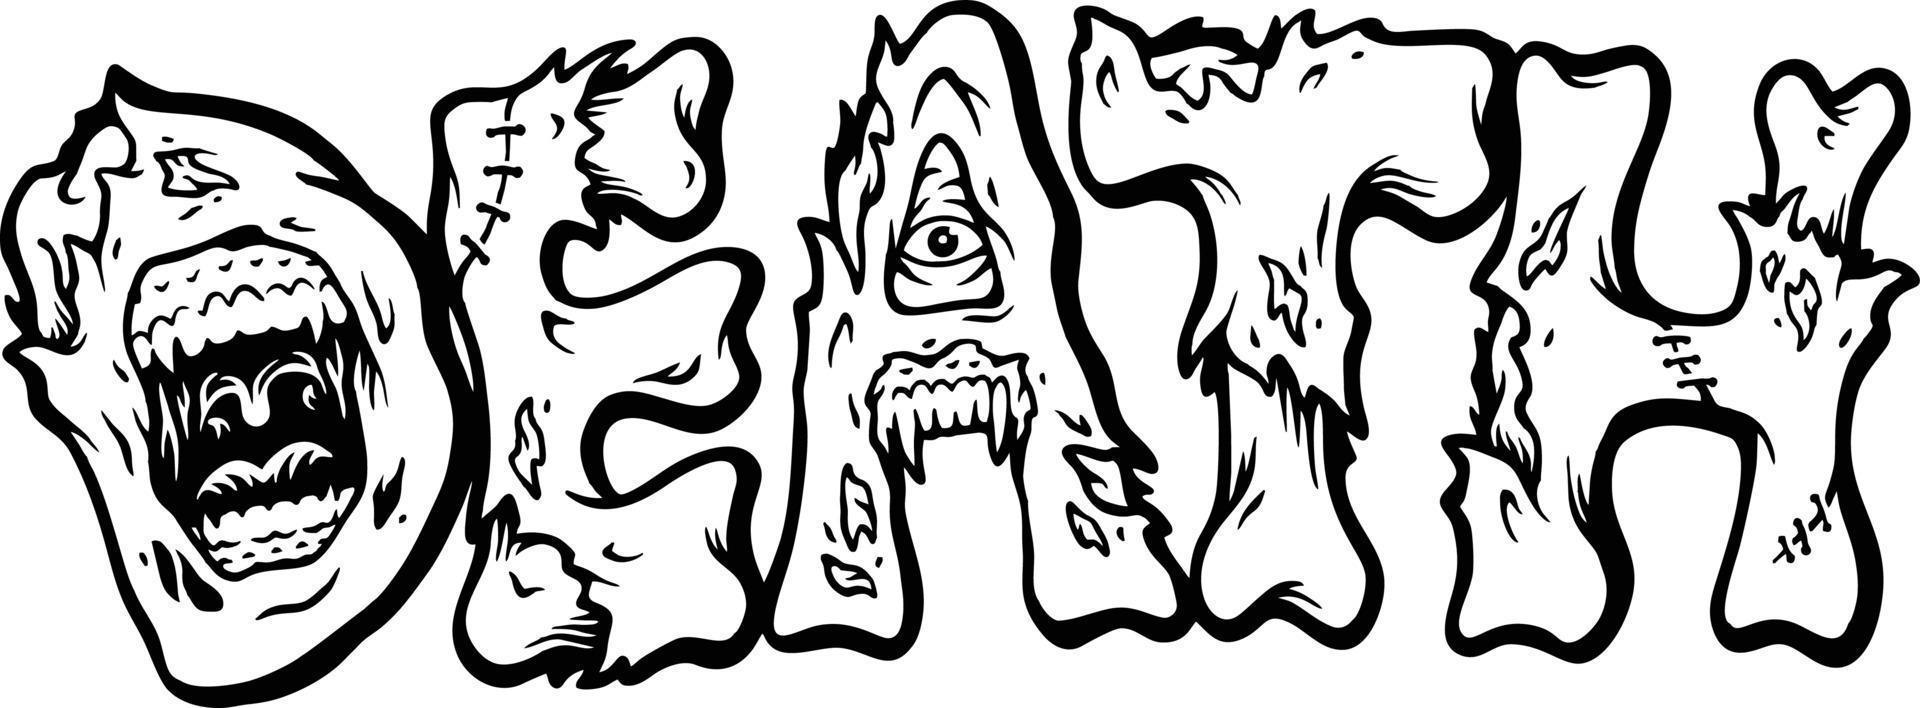 griezelig zombie bot belettering woord dood monochroom vector illustraties voor uw werk logo, handelswaar t-shirt, stickers en etiket ontwerpen, poster, groet kaarten reclame bedrijf bedrijf